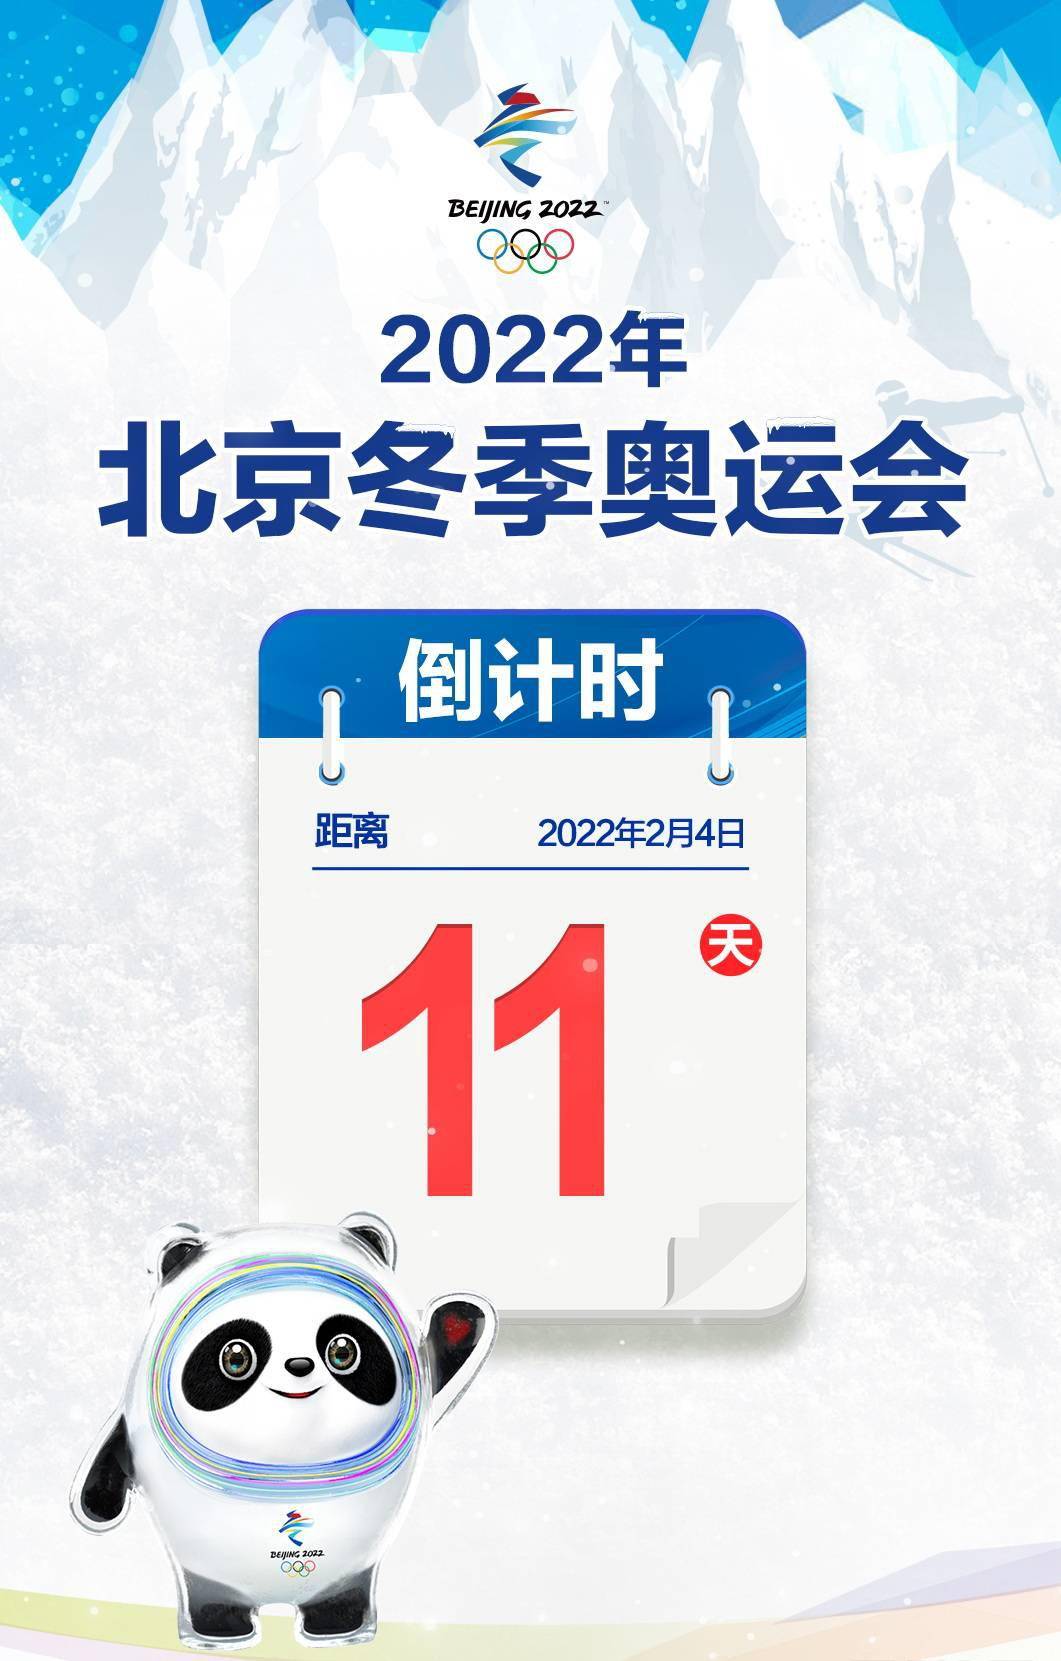 2022年北京冬季奥运会倒计时11天